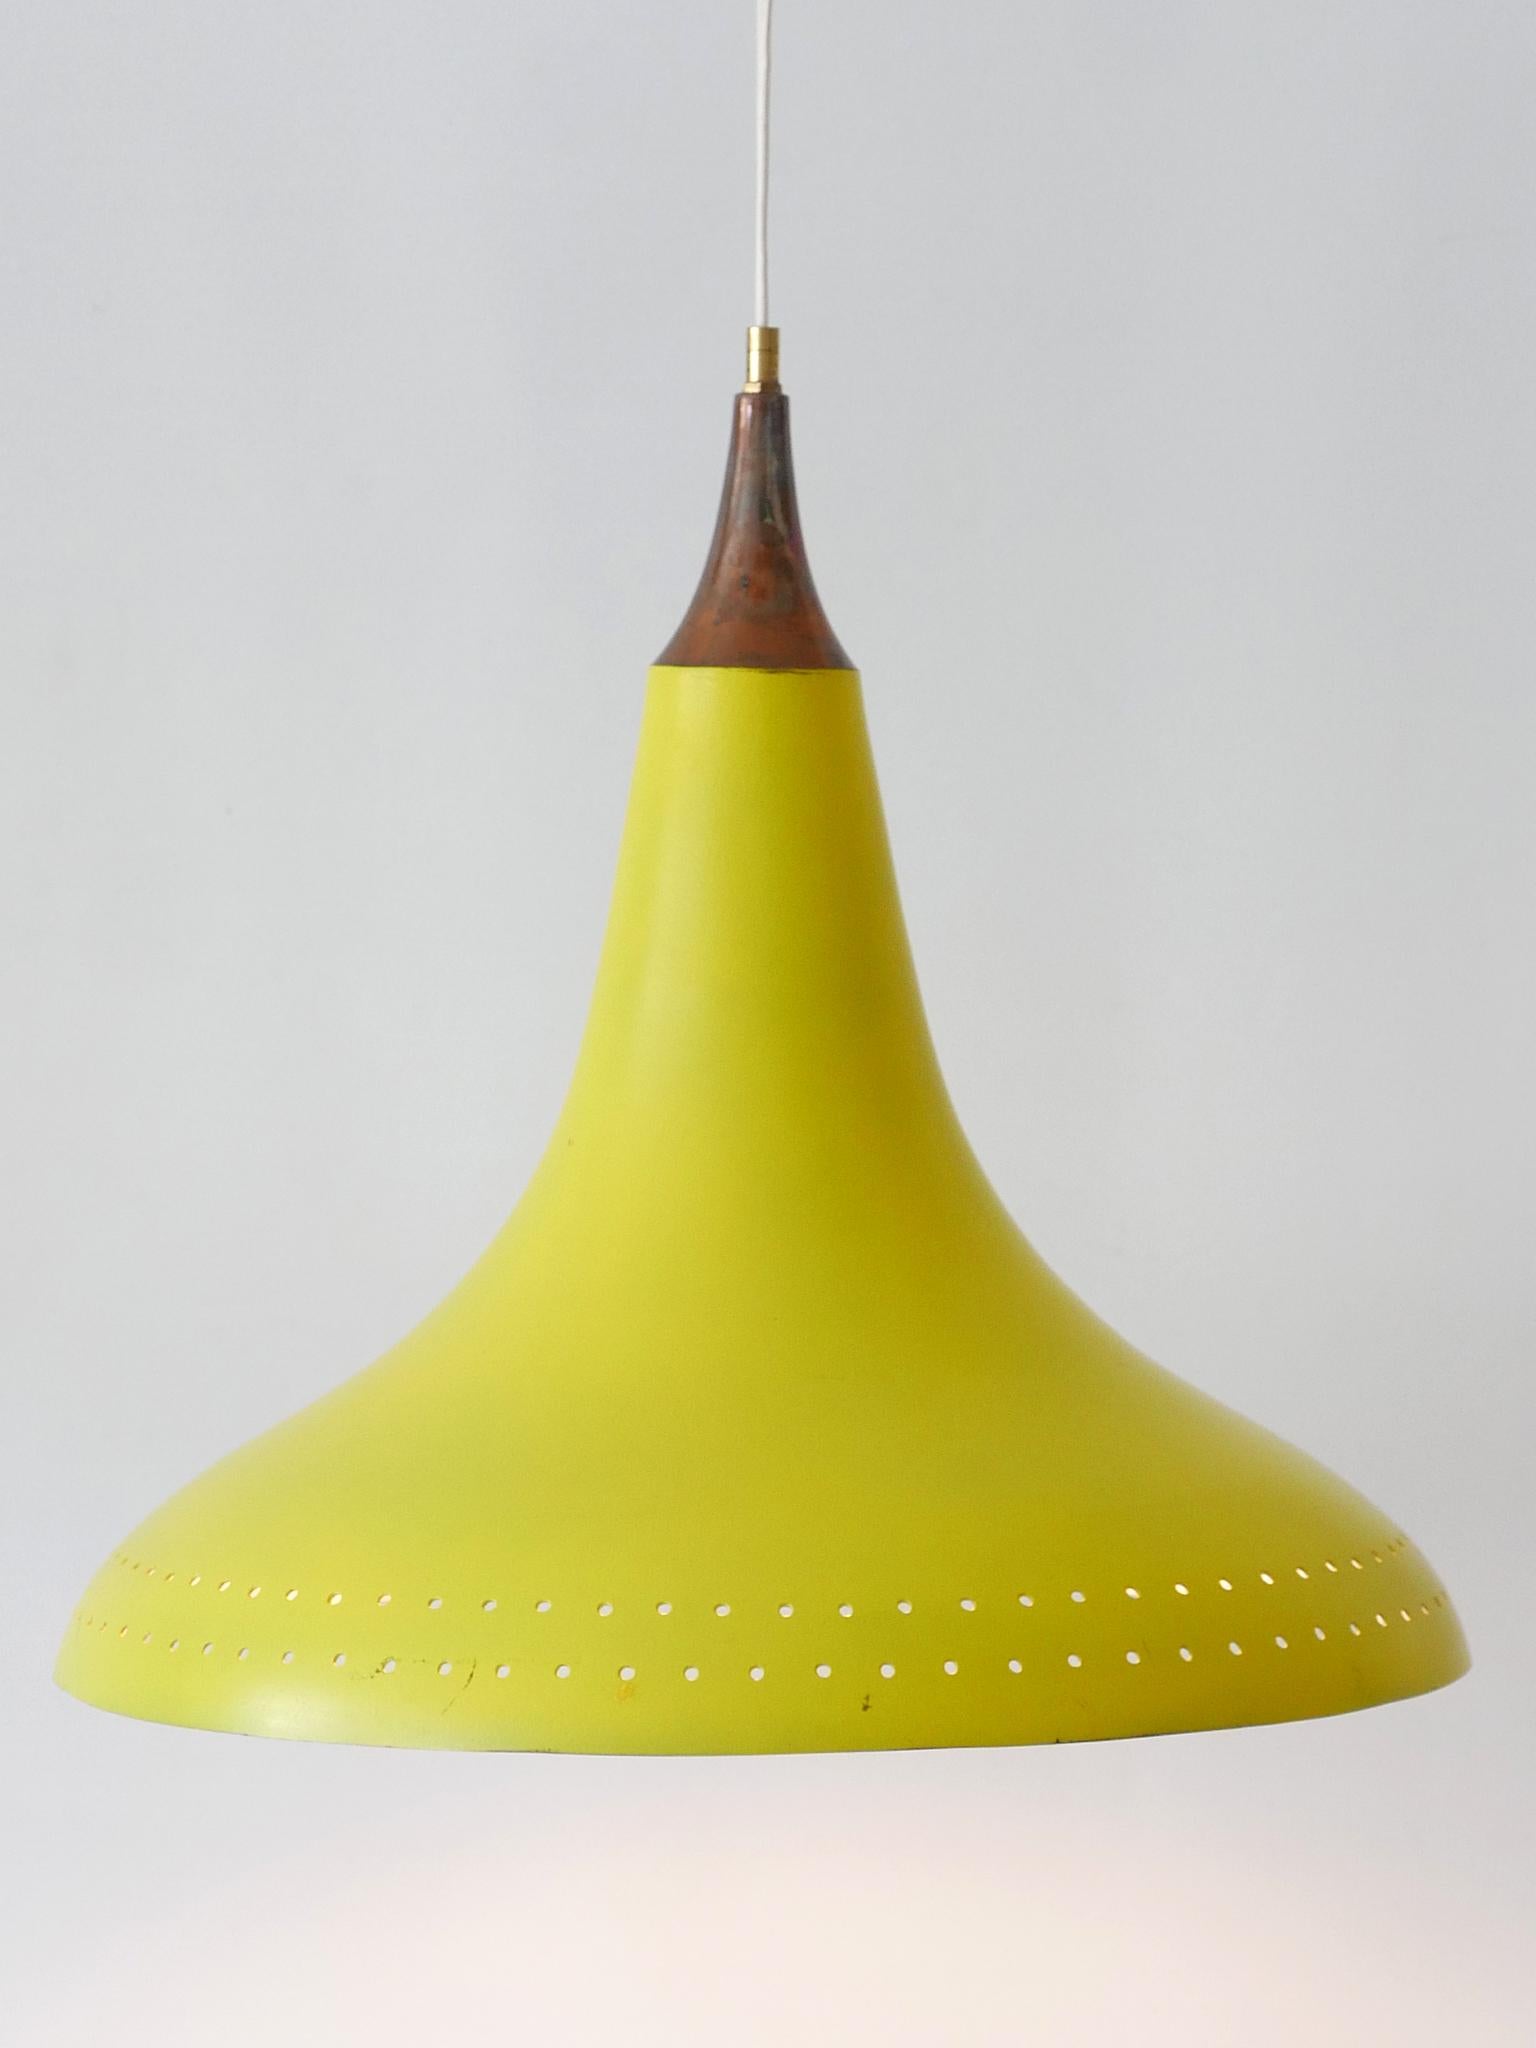 Austrian Elegant Mid-Century Modern Perforated Aluminium Pendant Lamp Austria 1960s For Sale